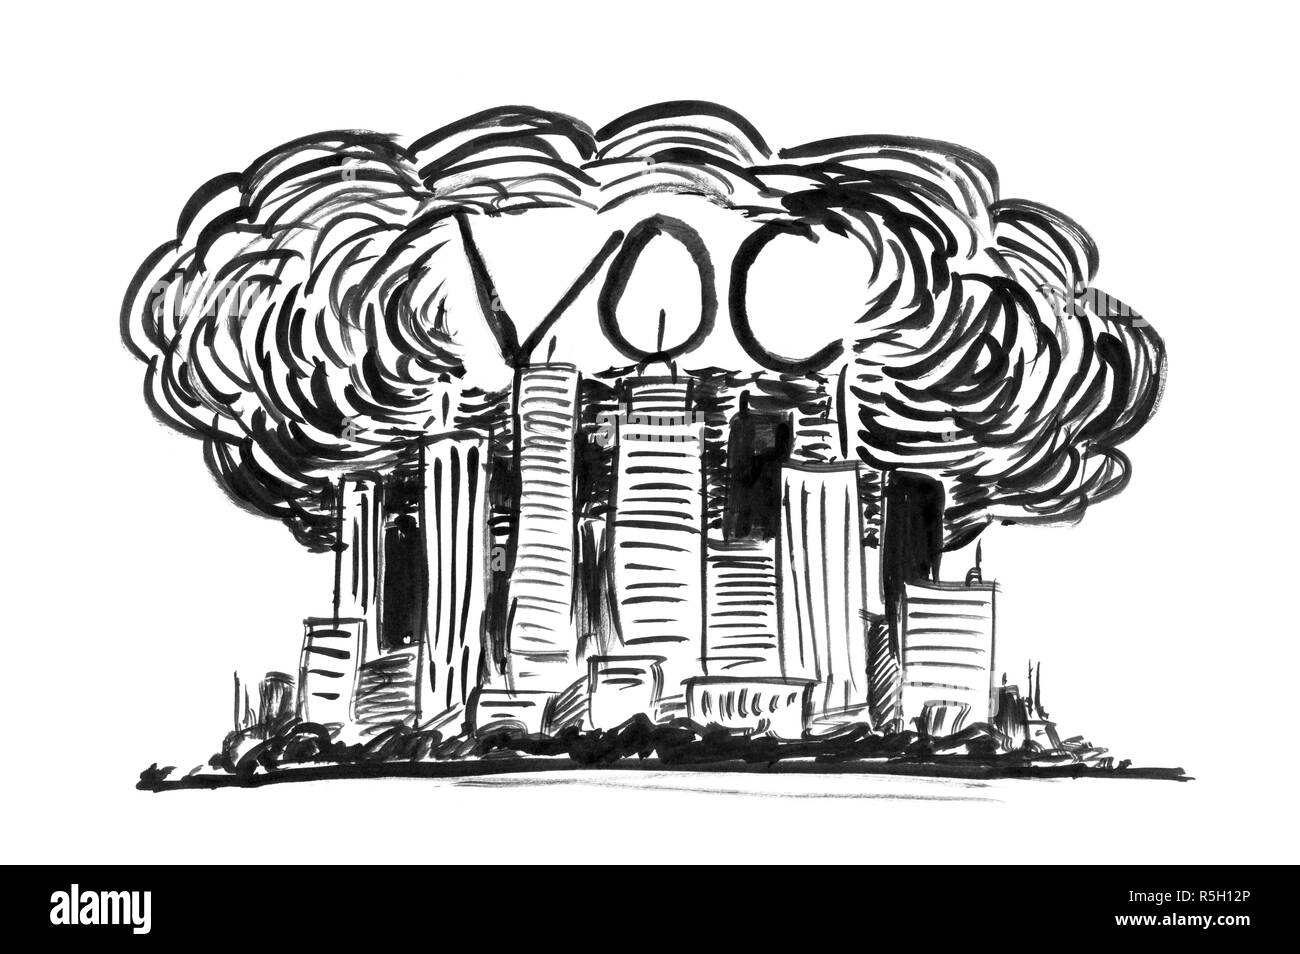 Inchiostro nero Grunge disegno a mano della città coperto da smog e VOC o un composto organico volatile dell'inquinamento atmosferico Foto Stock